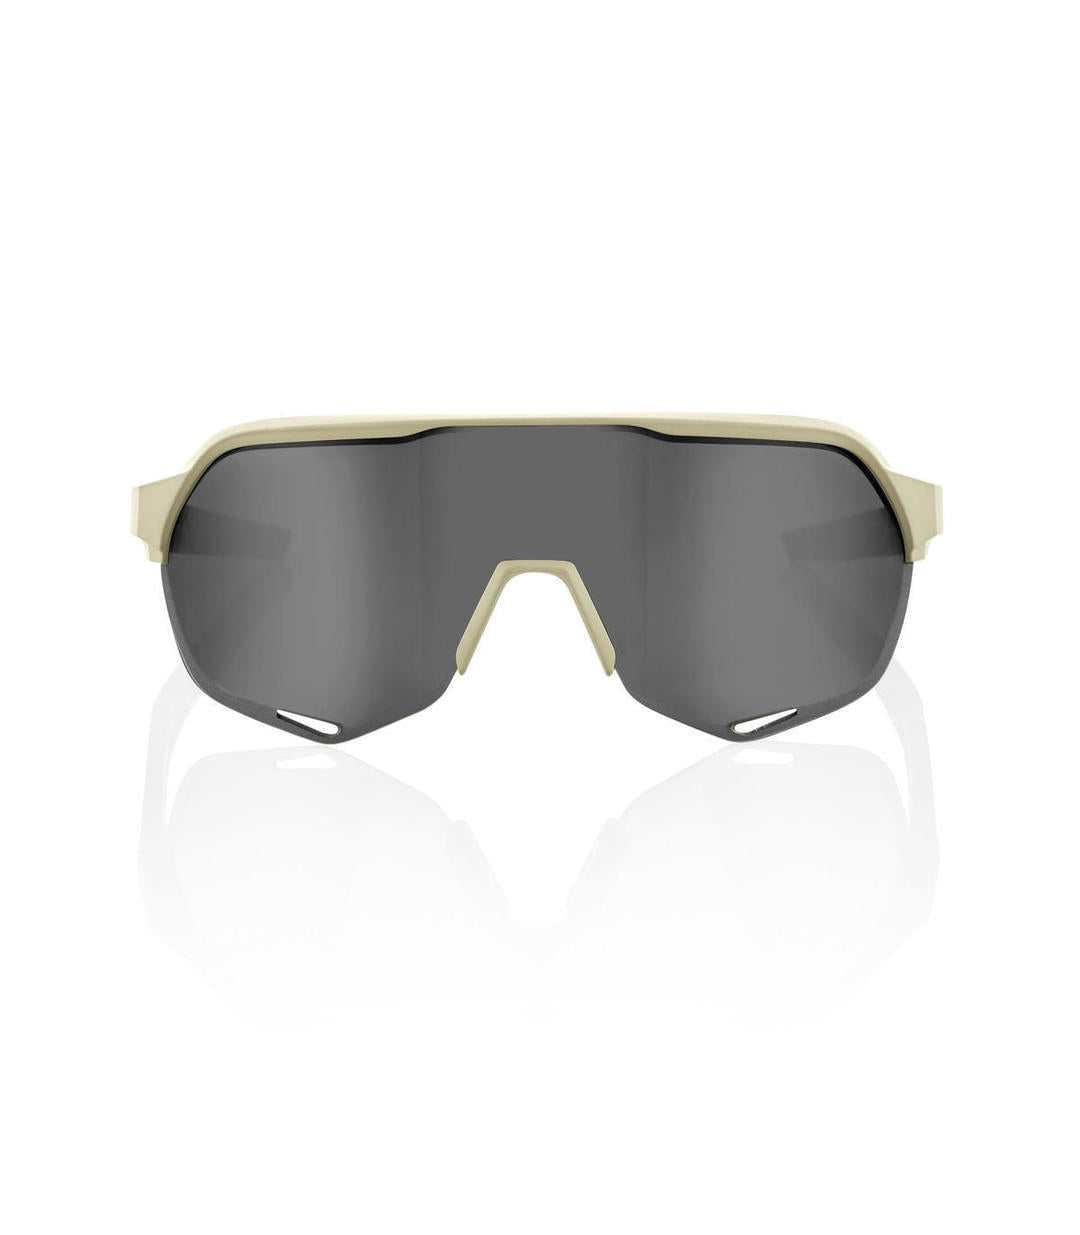 RIDE 100% Gafas de Sol S2 - Soft Tact Quicksand/Smoke Lens